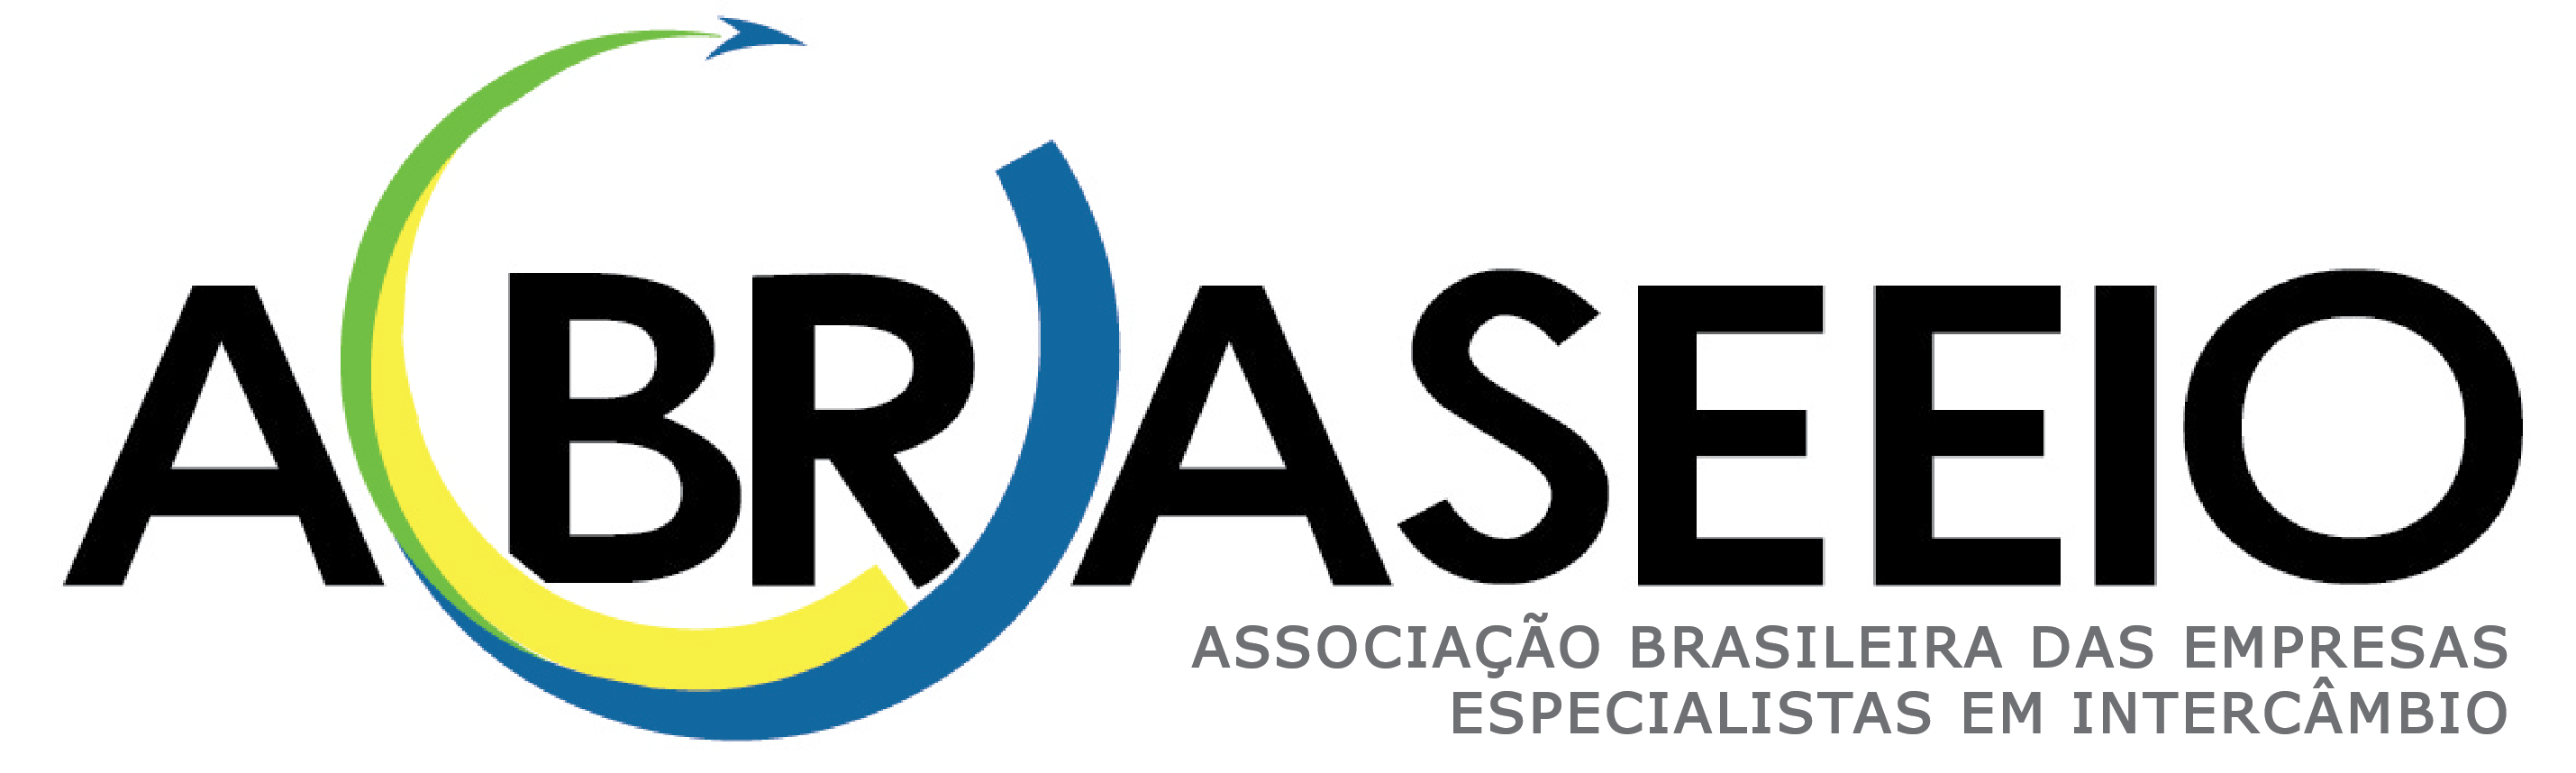 ABRASEEIO - abraseeio.com.br